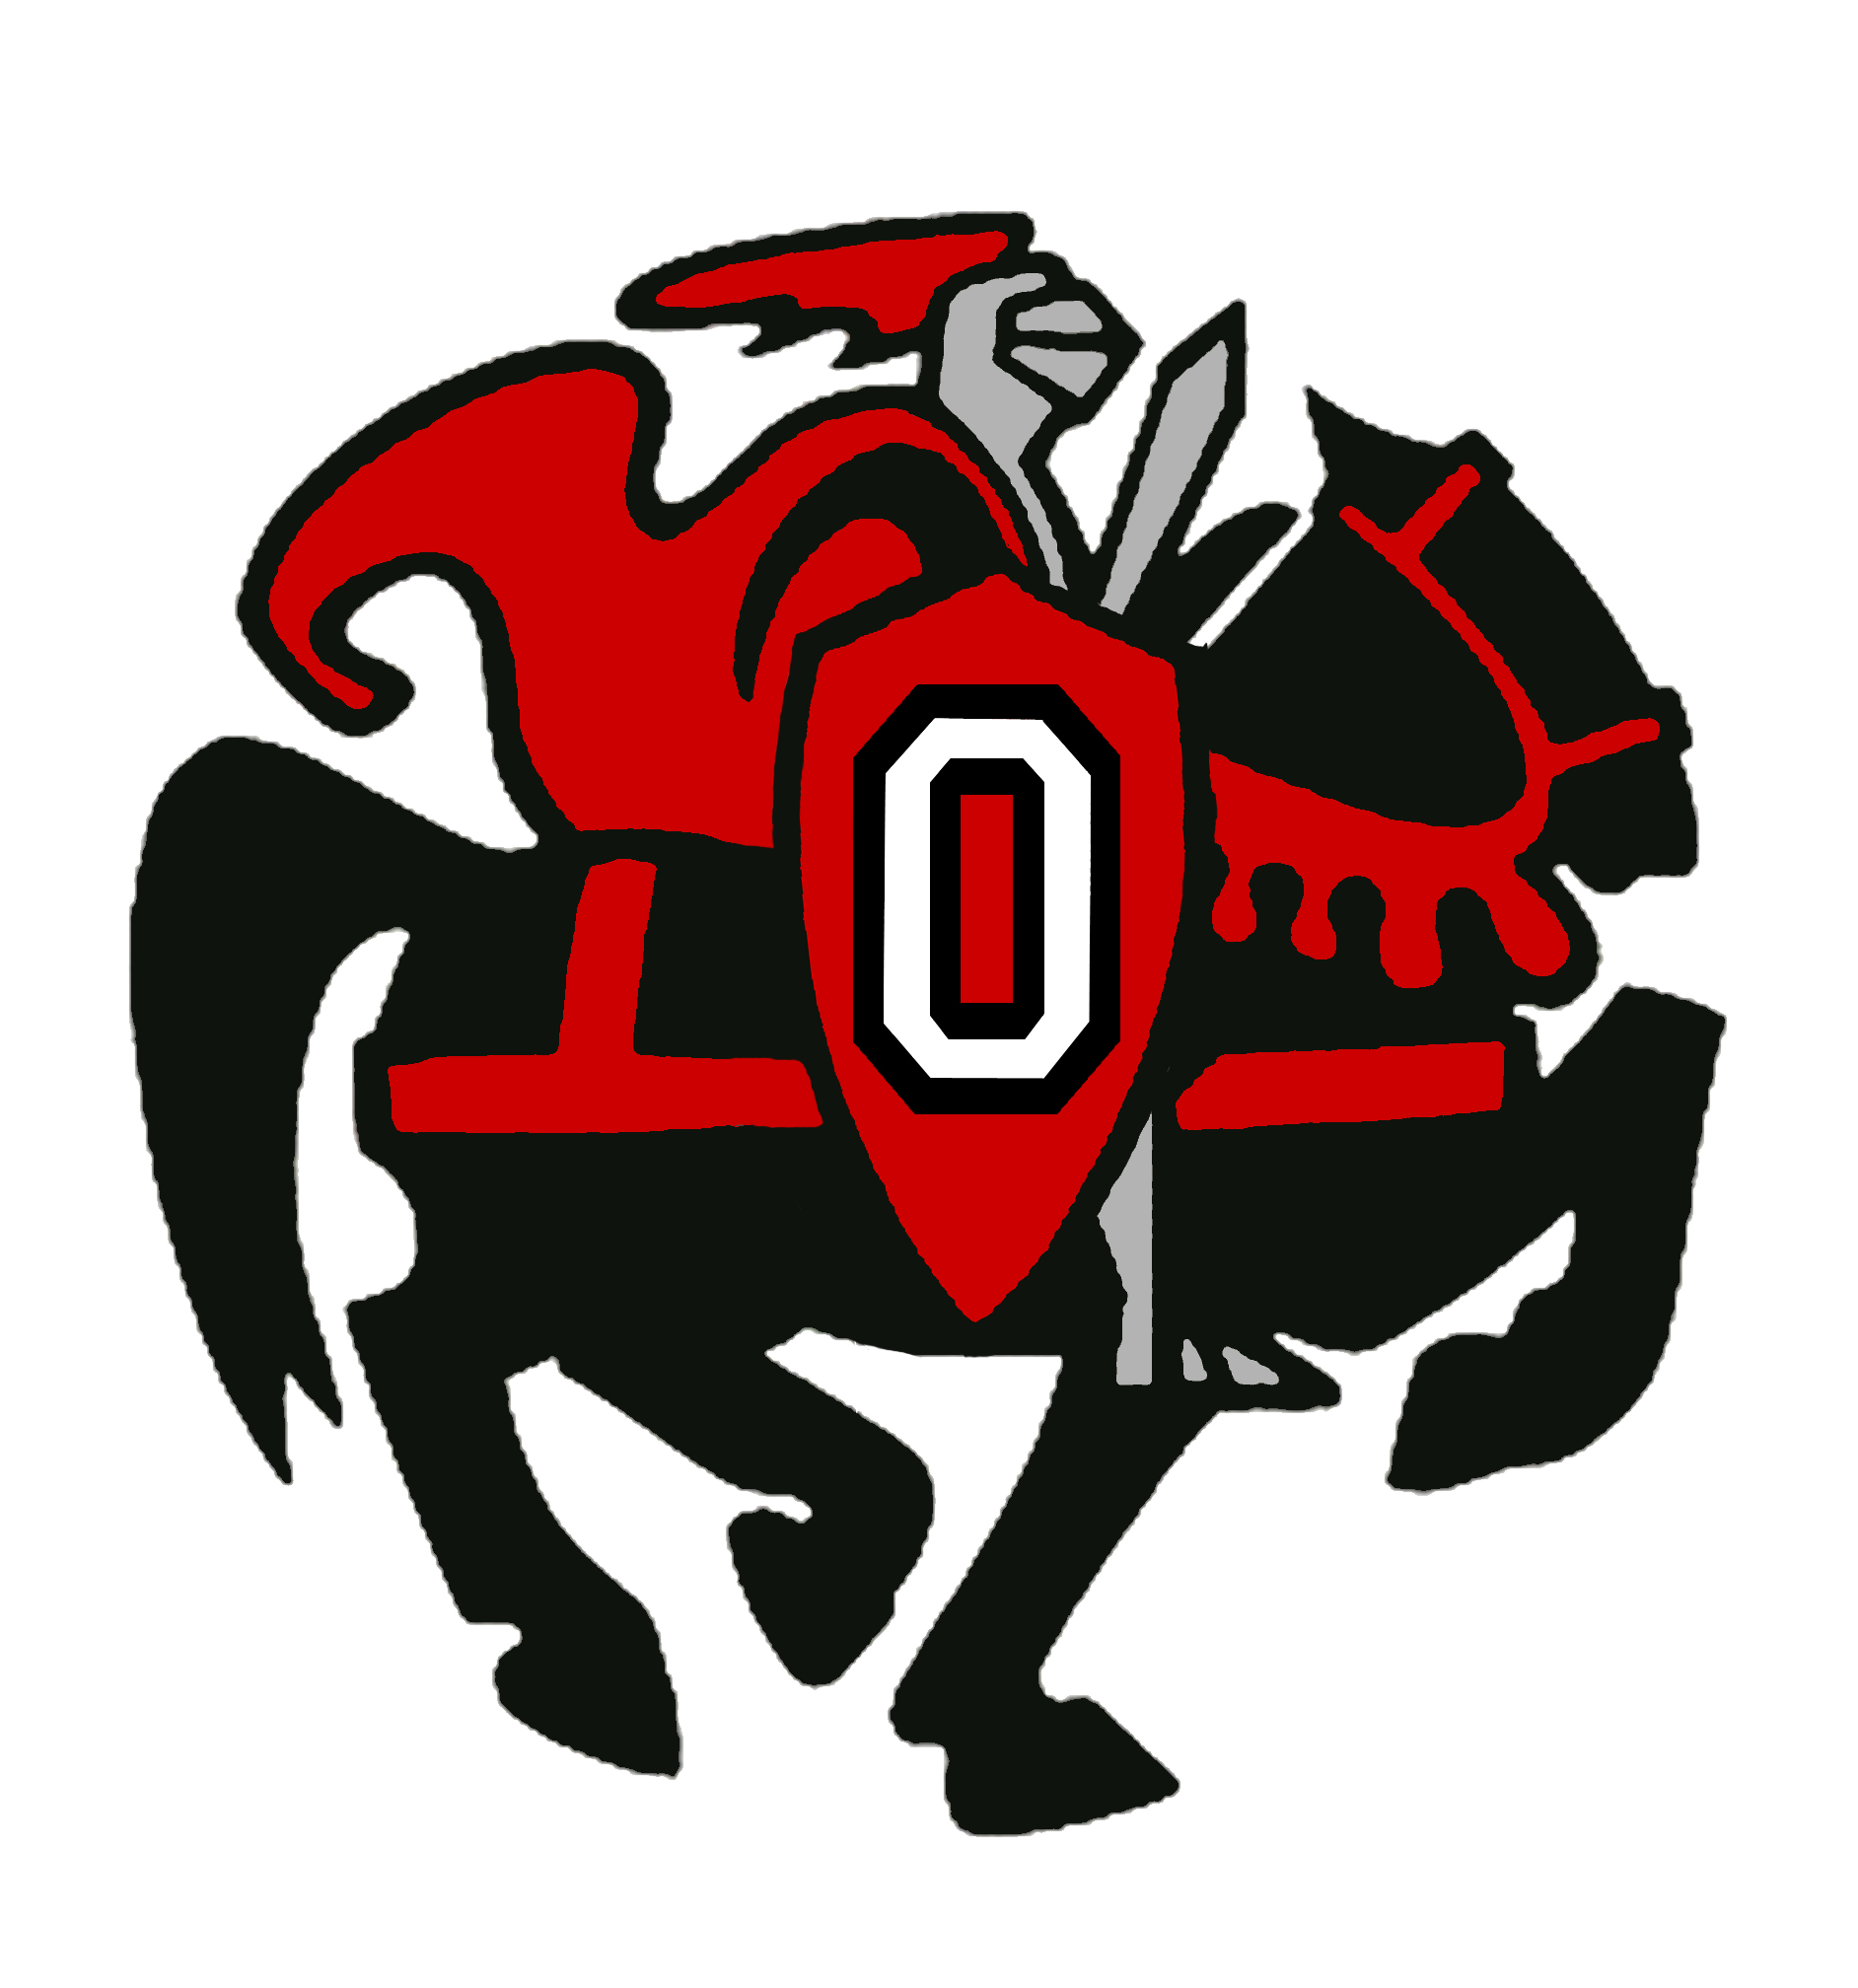 Orion CUSD 223 - Orion High School Logos